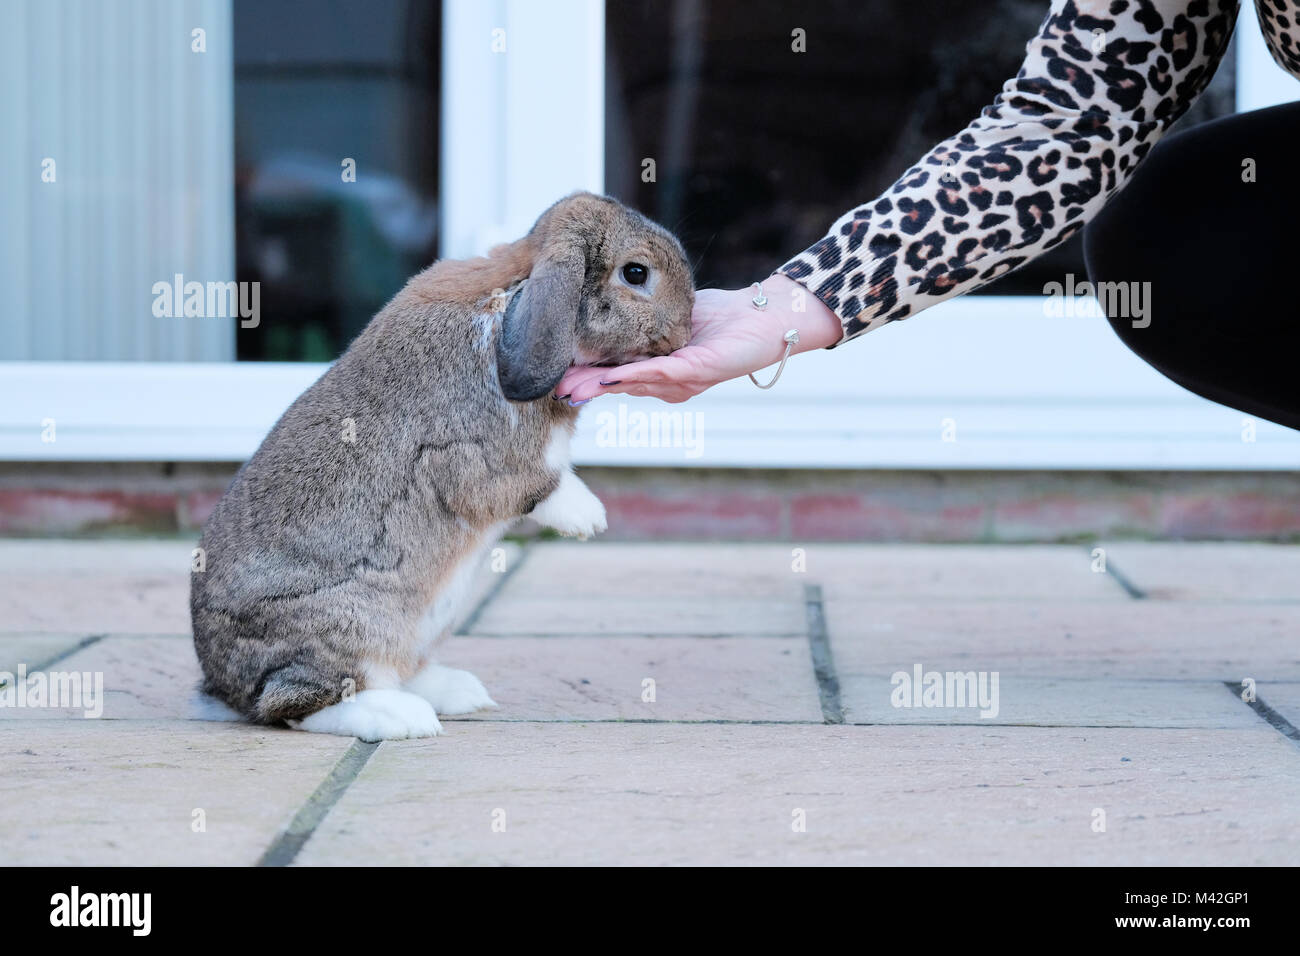 Apprivoiser un bélier nain lapin, animal, le lapin mange une traiter de ses propriétaires la main. le lapin est totalement détendu et se redressa sur ses pattes pour manger les friandises Banque D'Images